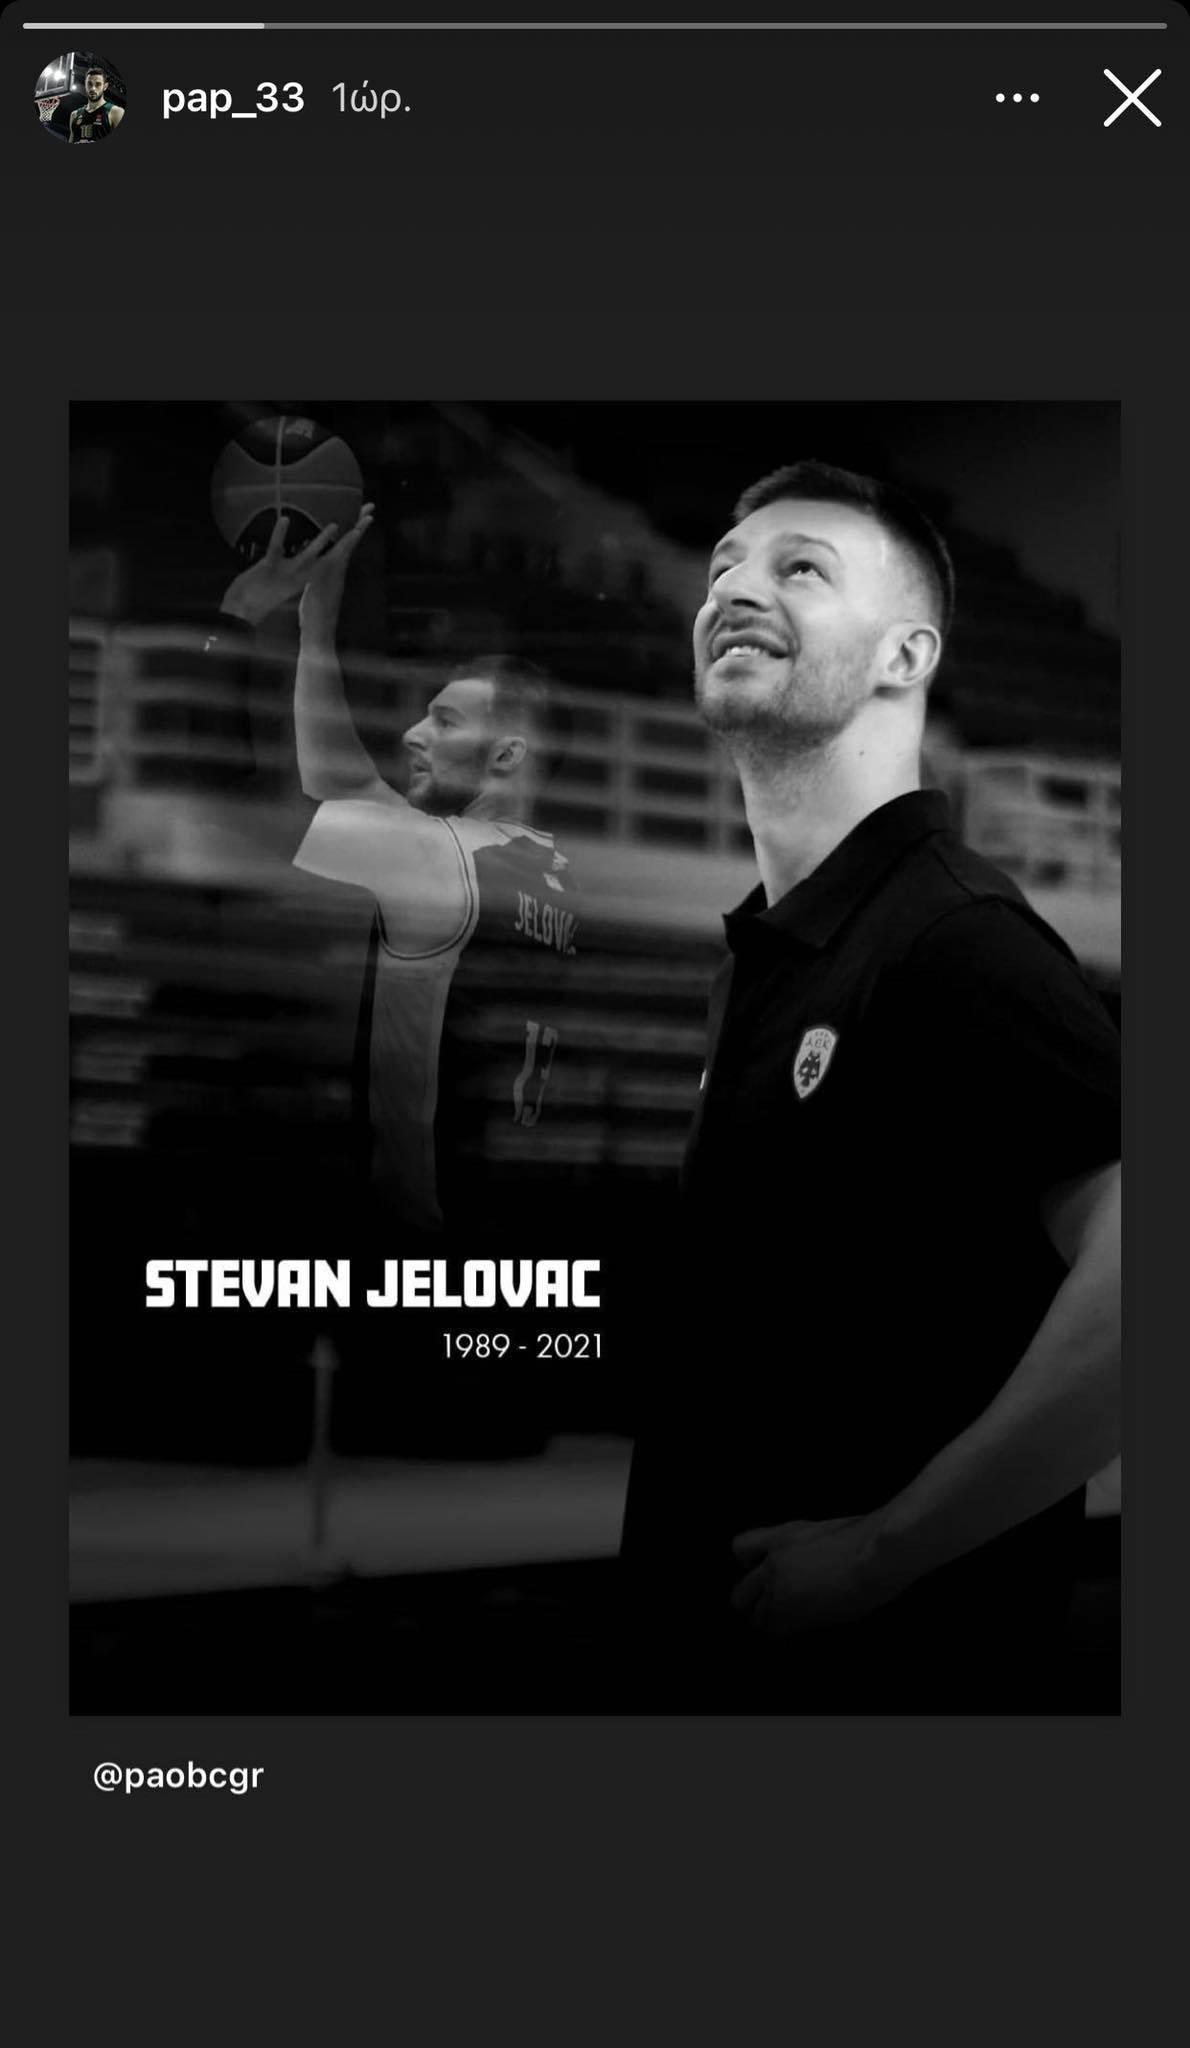 Συγκλονισμένοι οι παίκτες του Παναθηναϊκού για τον Στέφαν Γέλοβατς (pics)